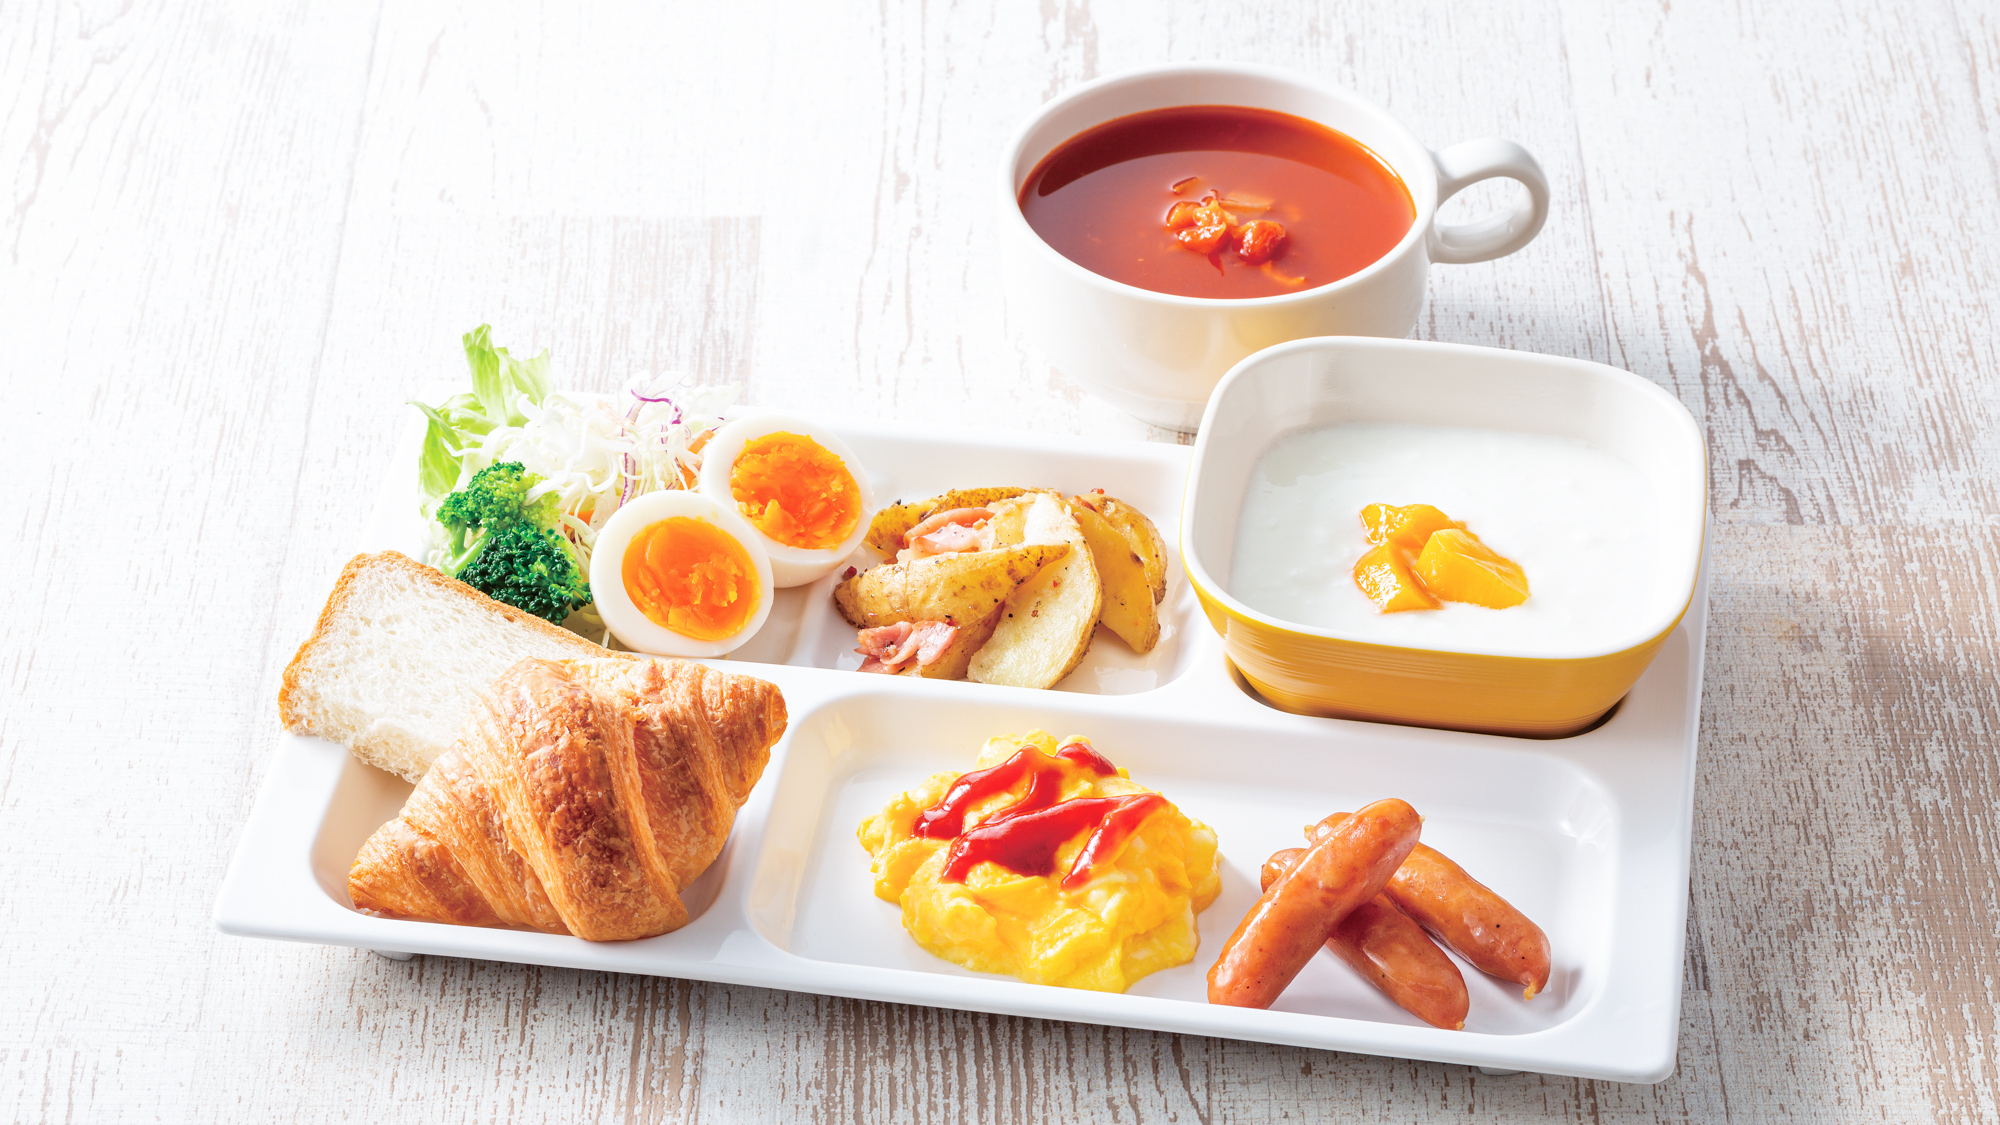 【盛り付け例】洋風中心のビュッフェスタイルの朝食です。お好みの組み合わせでお楽しみください。